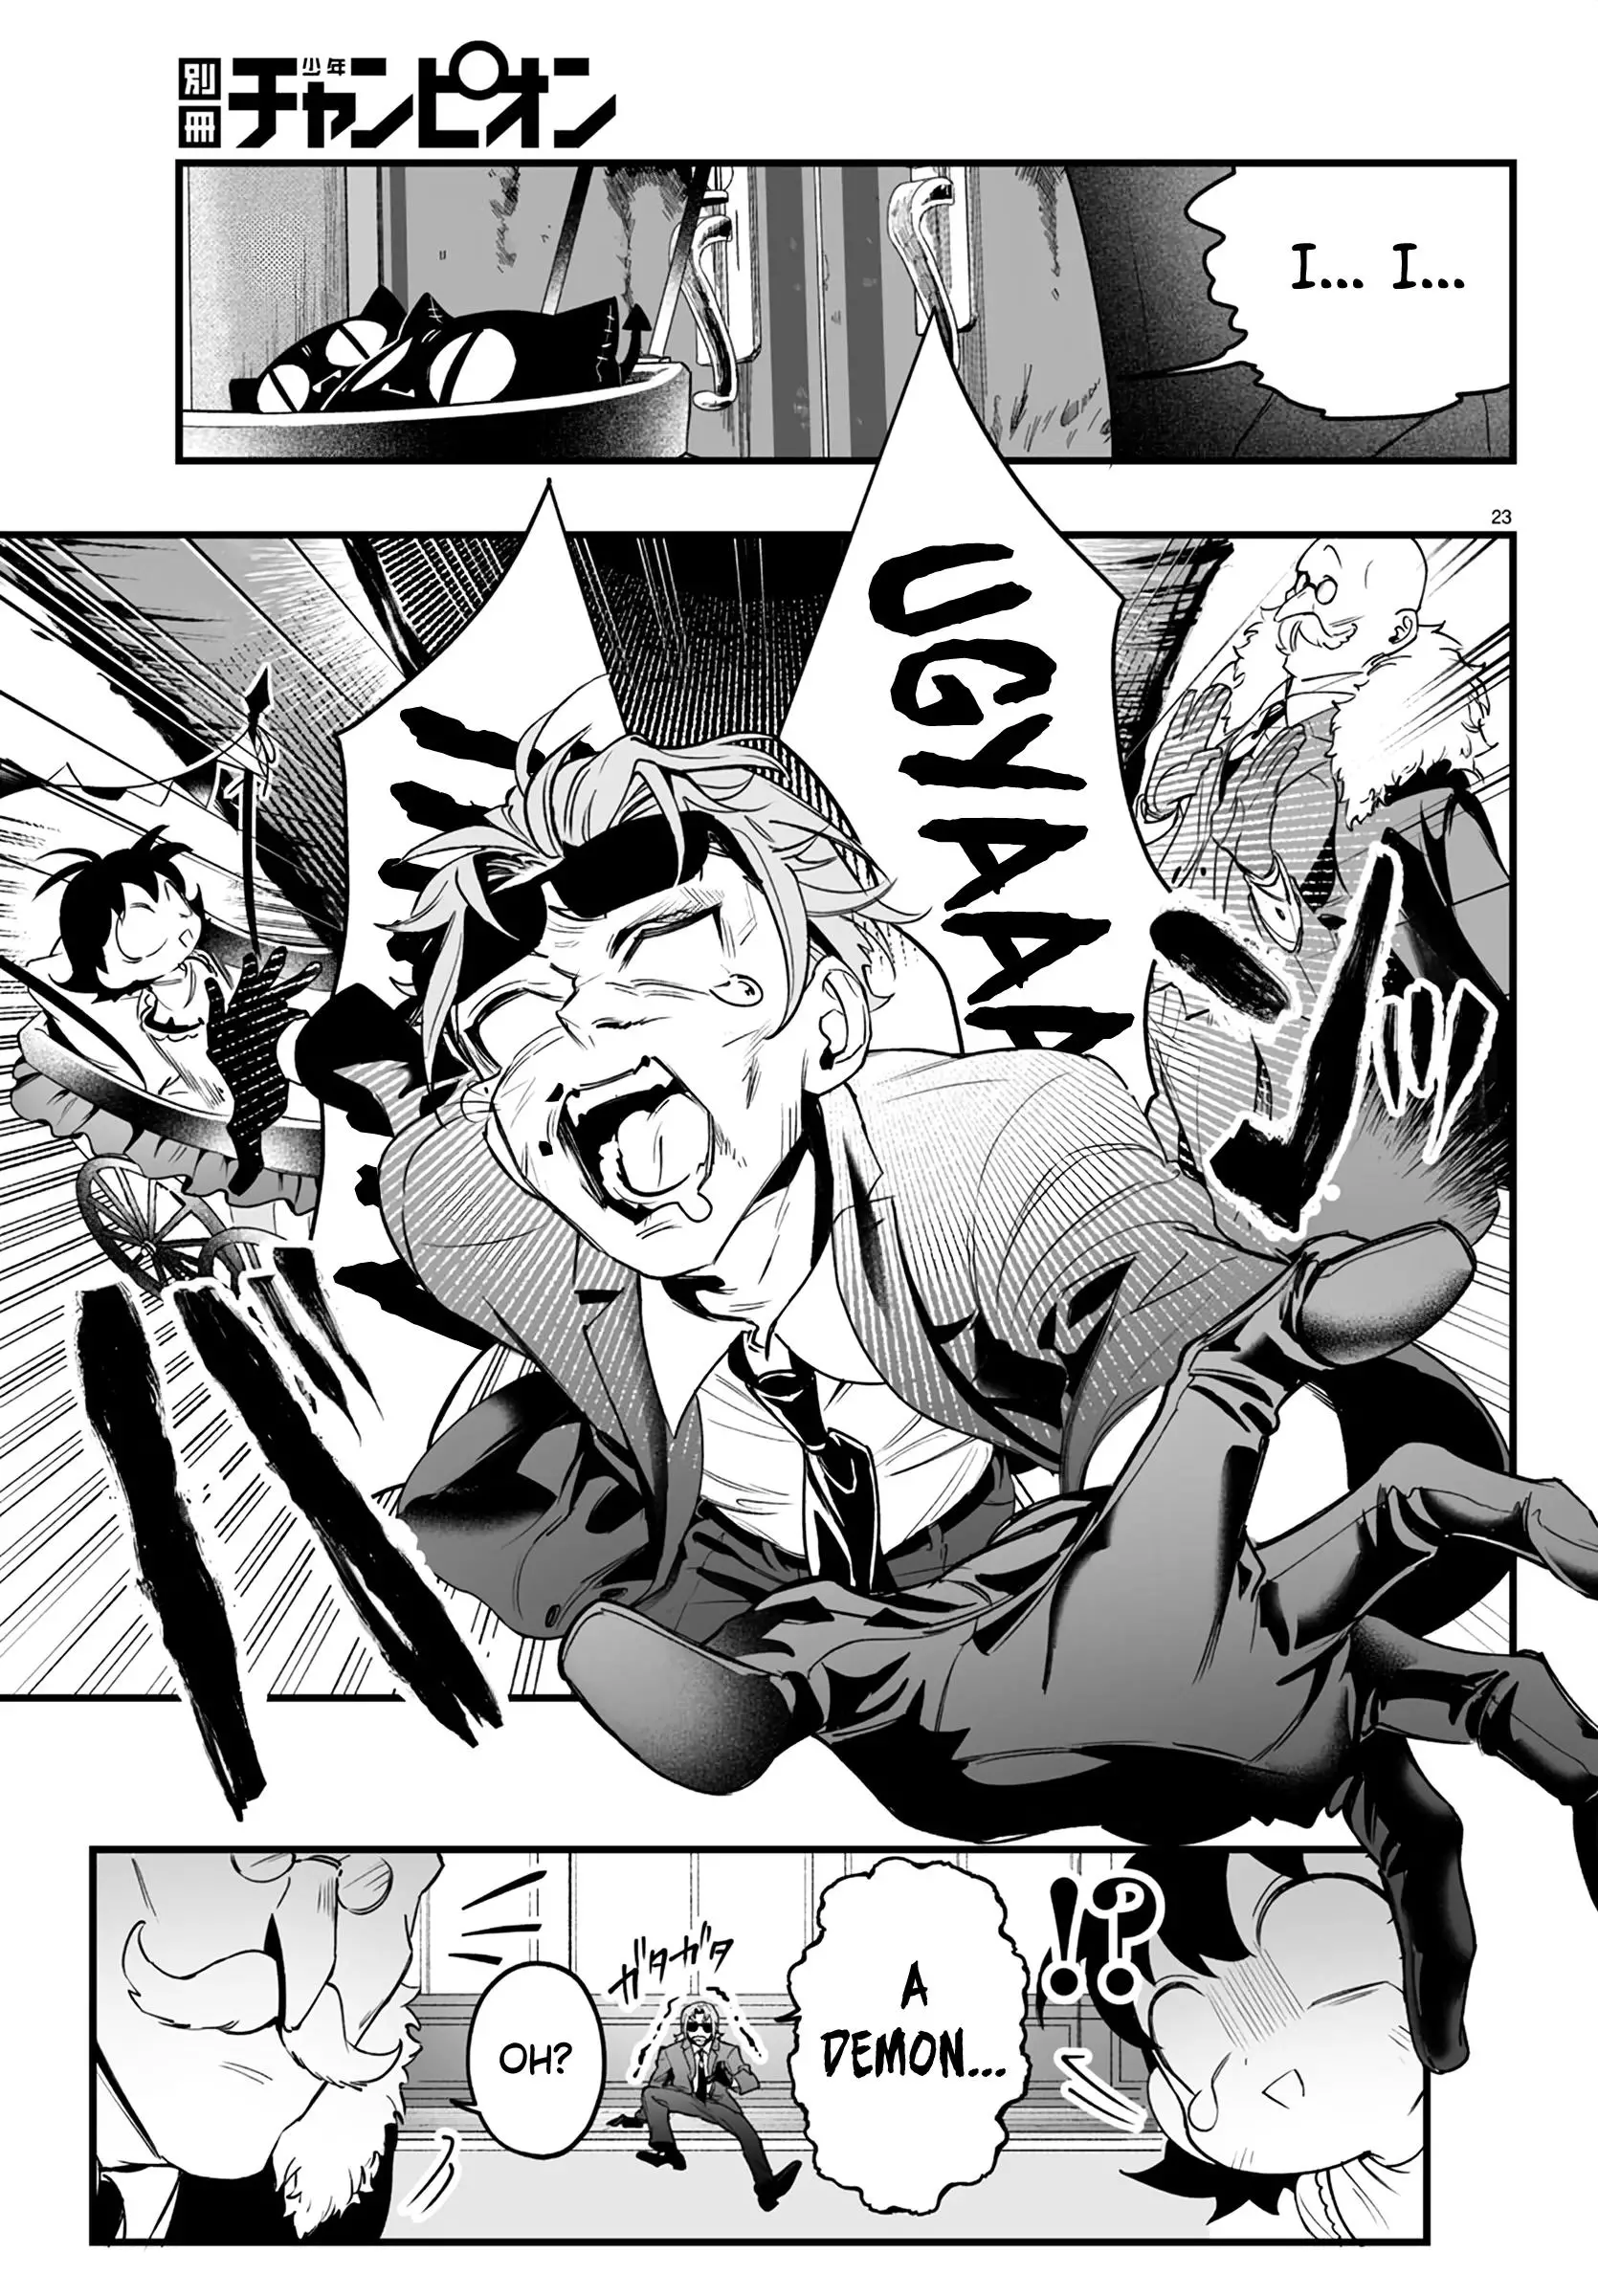 Mairimashita! Iruma-Kun Mafia Au - 1 page 25-c6ceab73